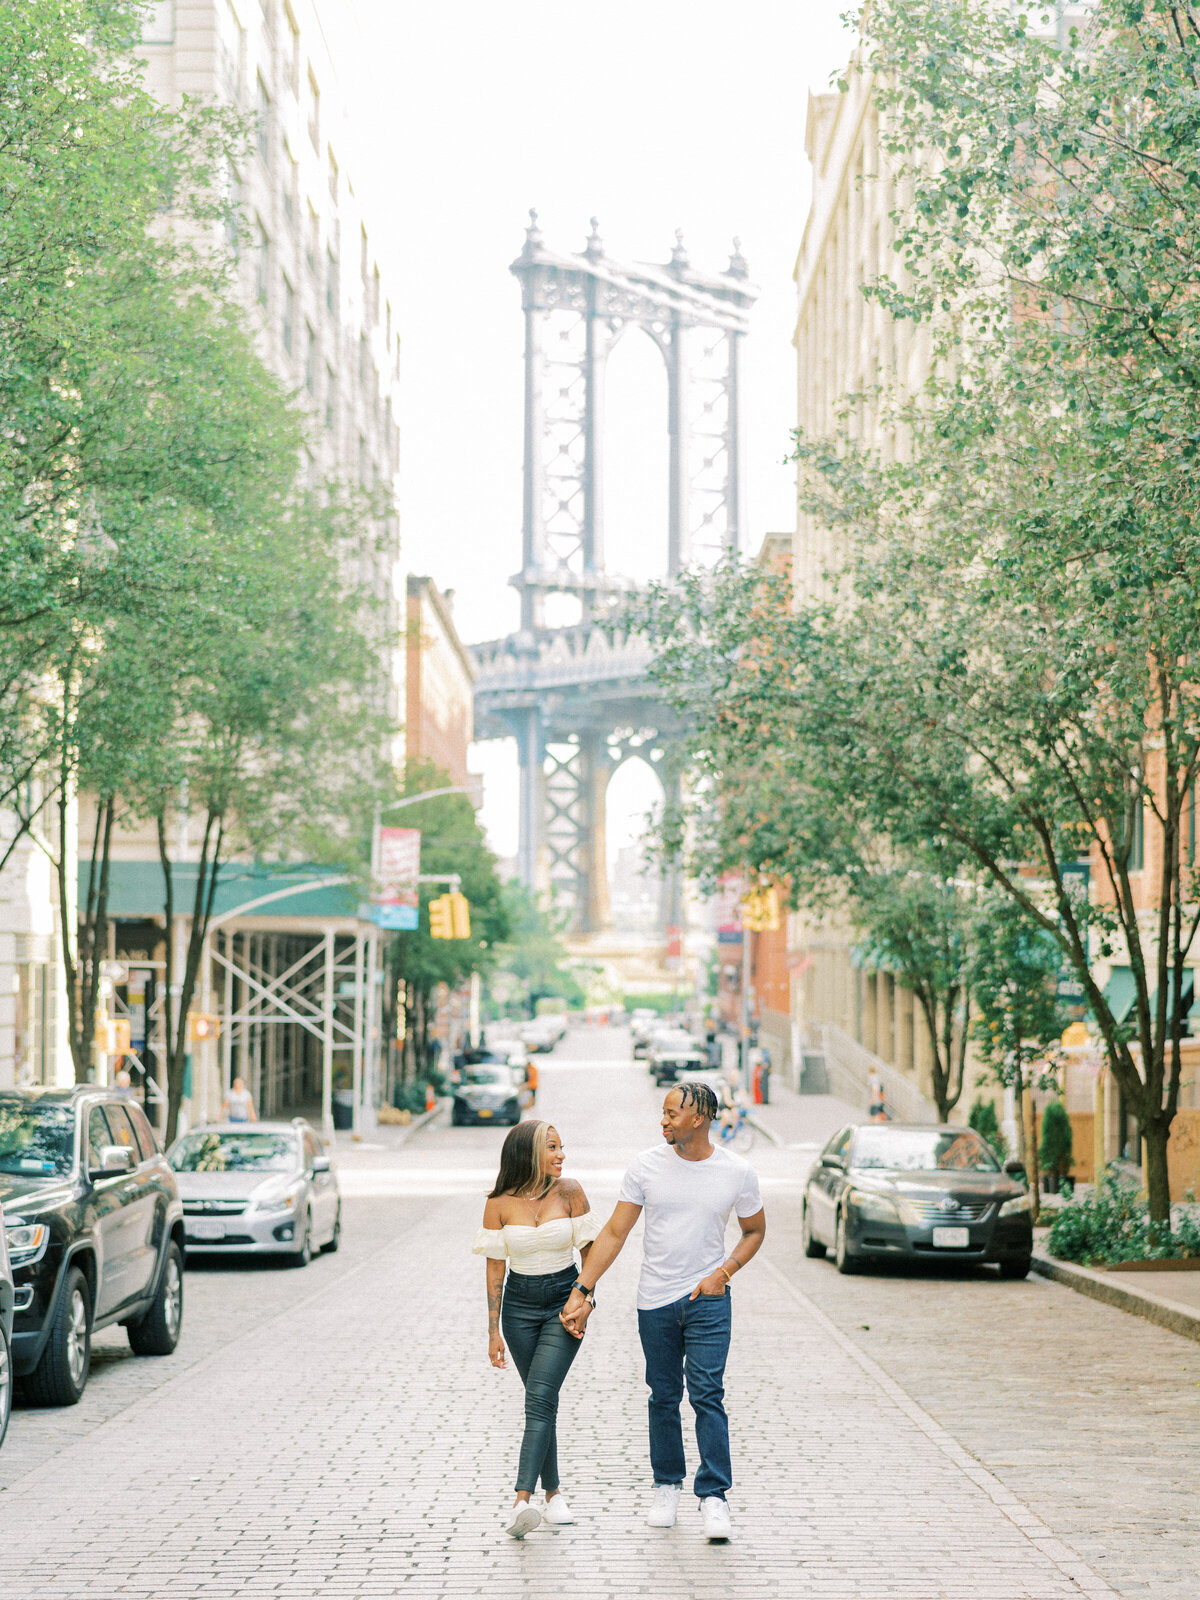 Brooklyn Bridge and DUMBO Sunrise, Engagement Session | Amarachi Ikeji Photography 01